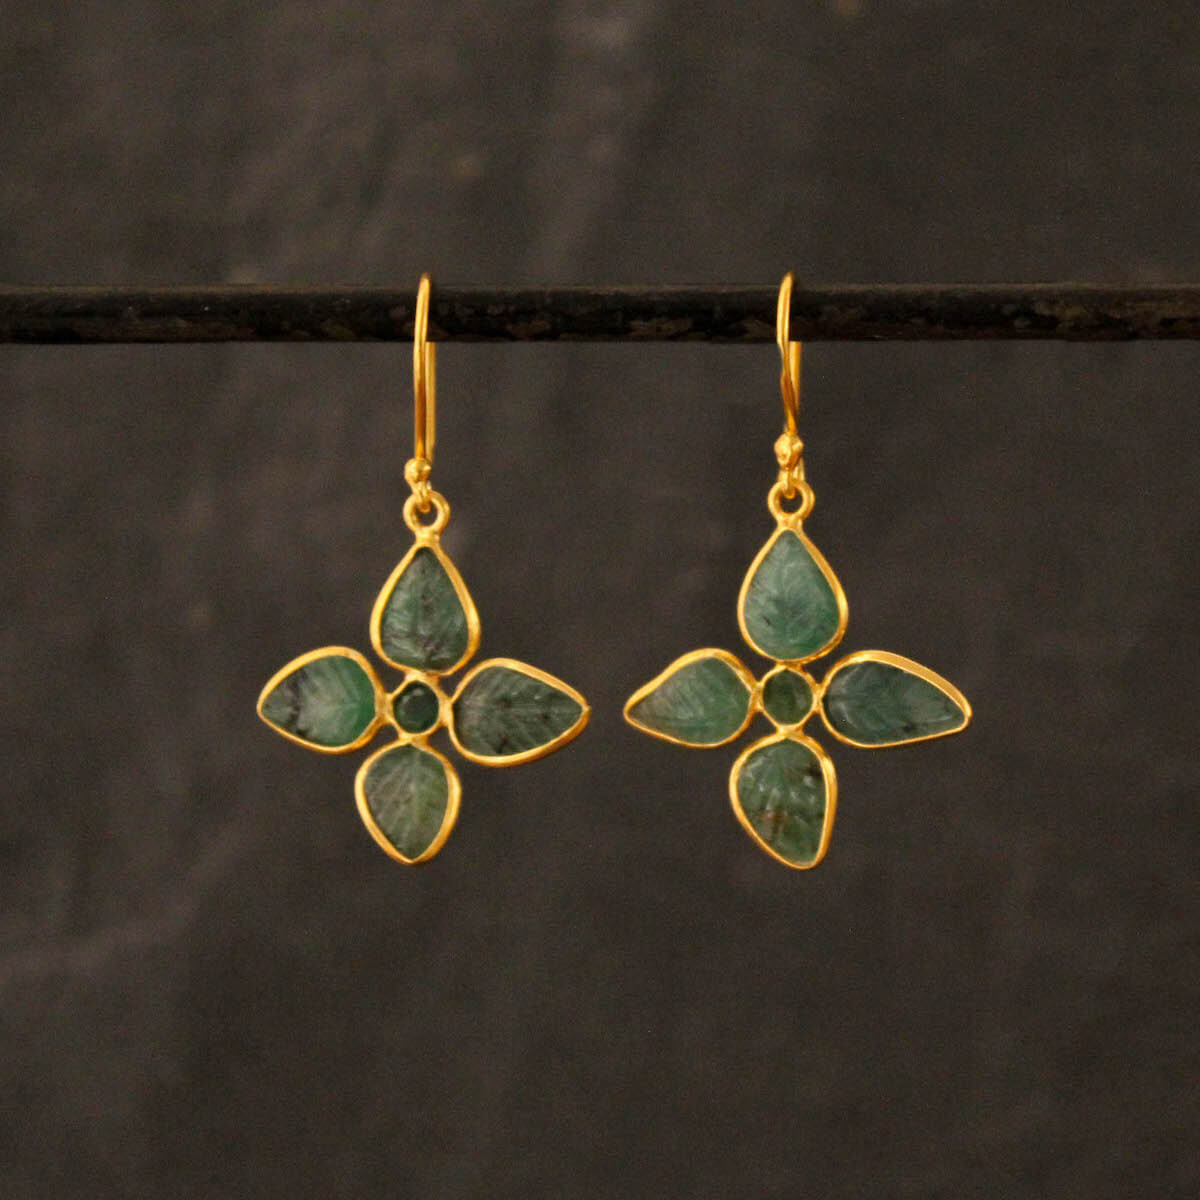 Carved emerald gemstone flower earrings in 18k gold vermeil - Beyond Biasa